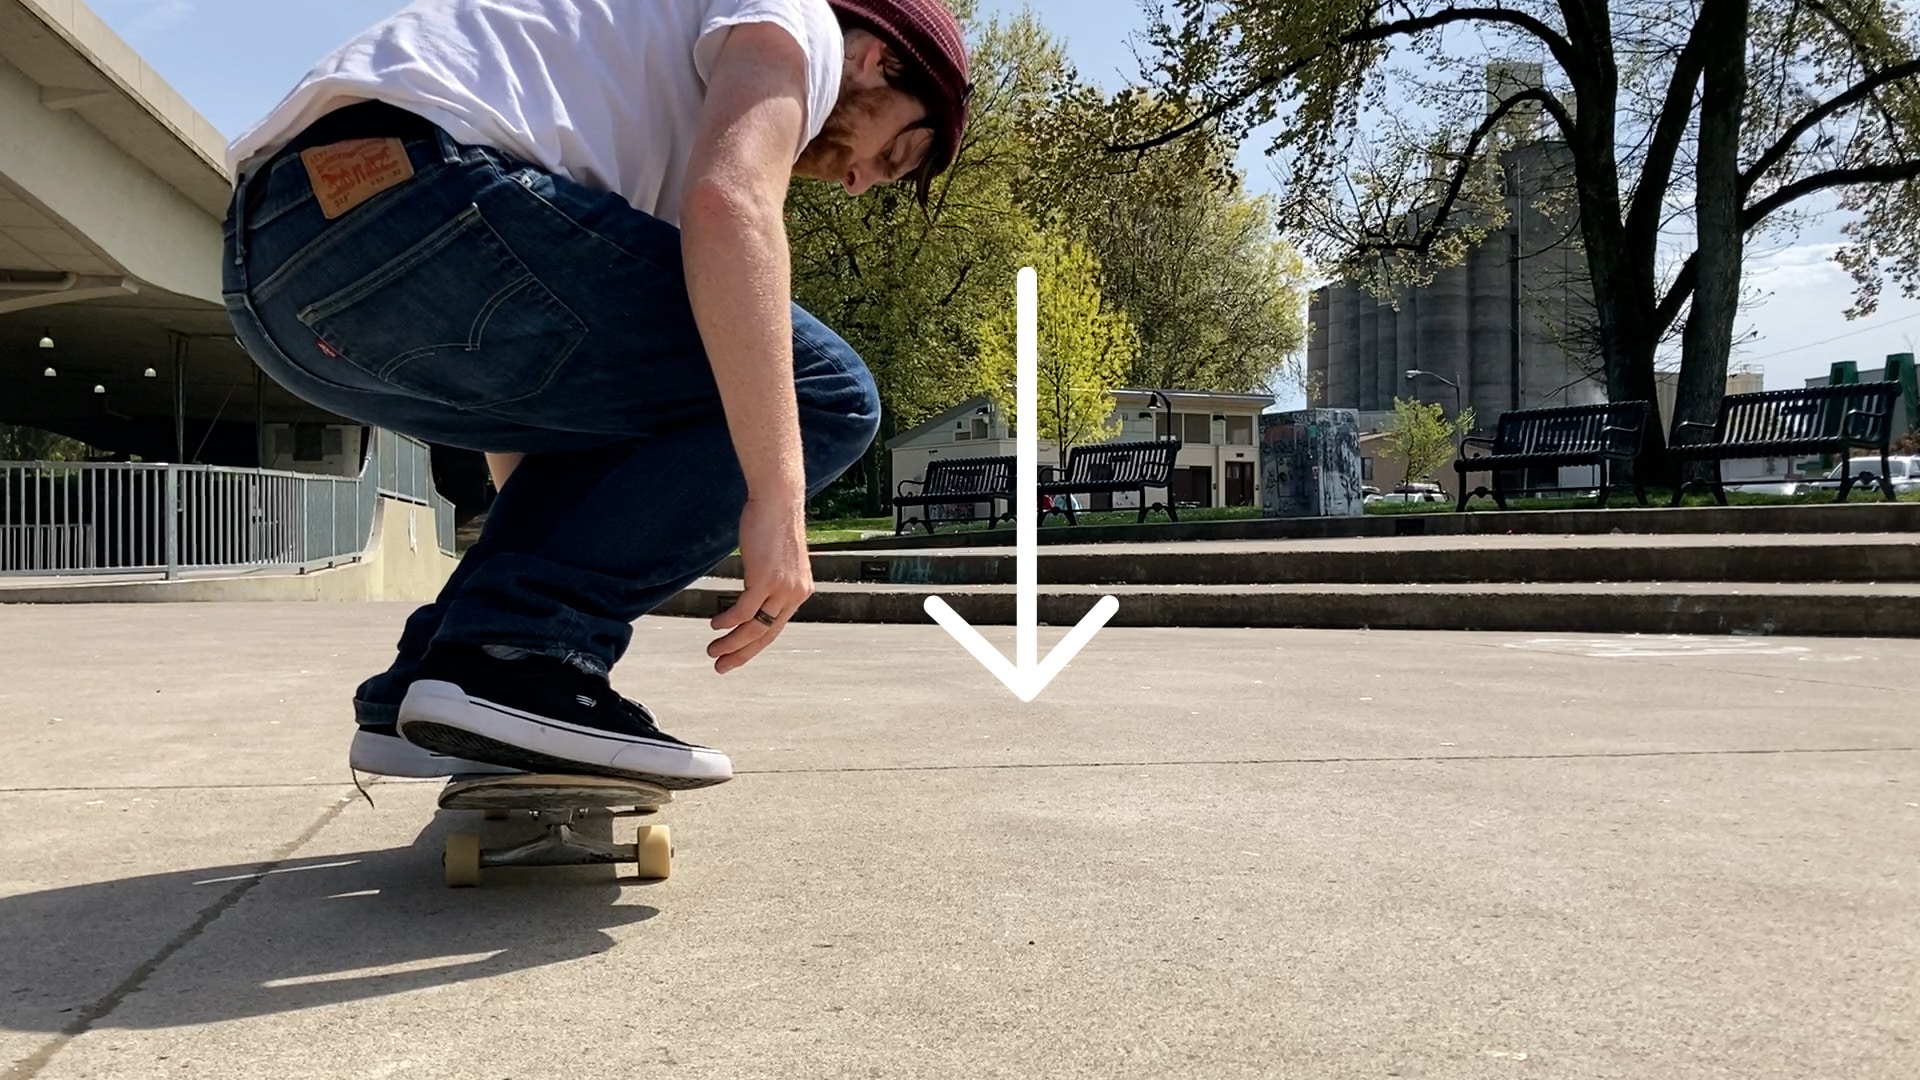 How To: Kickflip - Skateboard Trick Tip